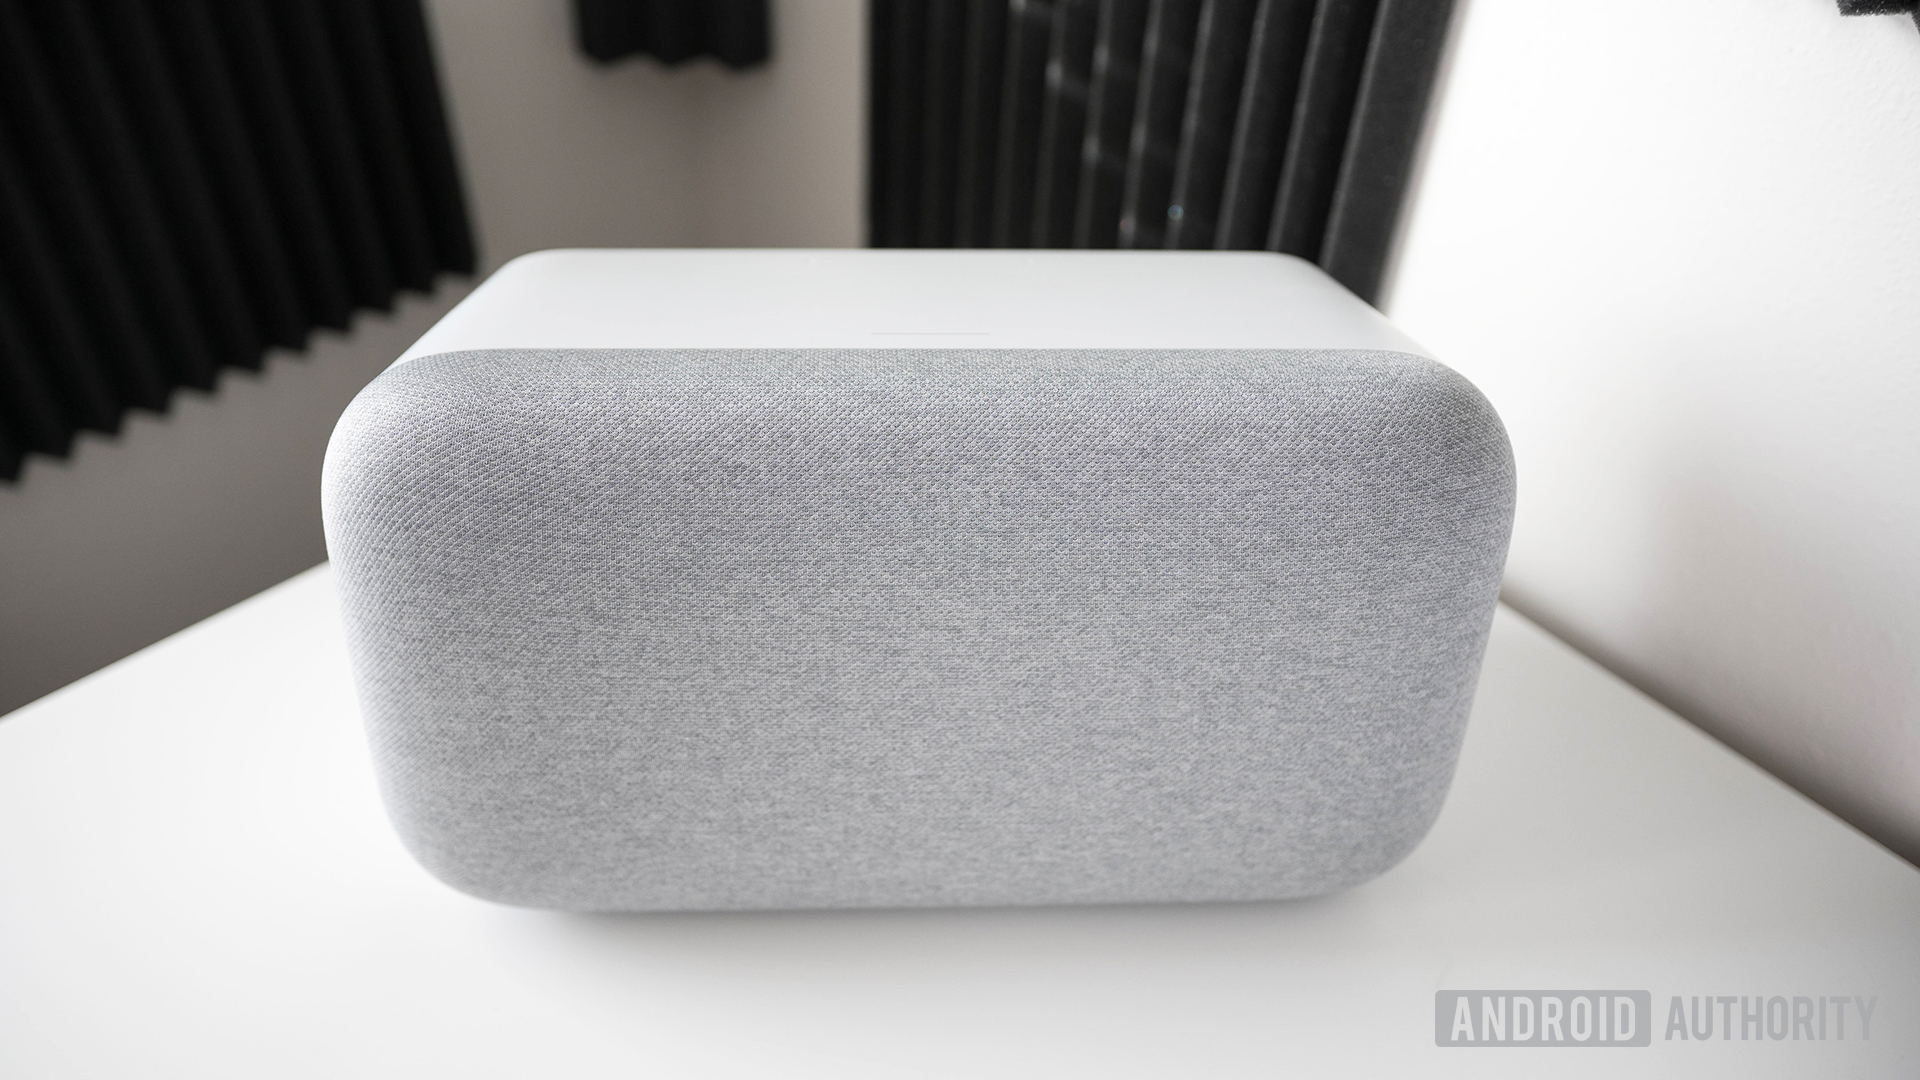 Google Home smart speaker front side - Google Home privacy